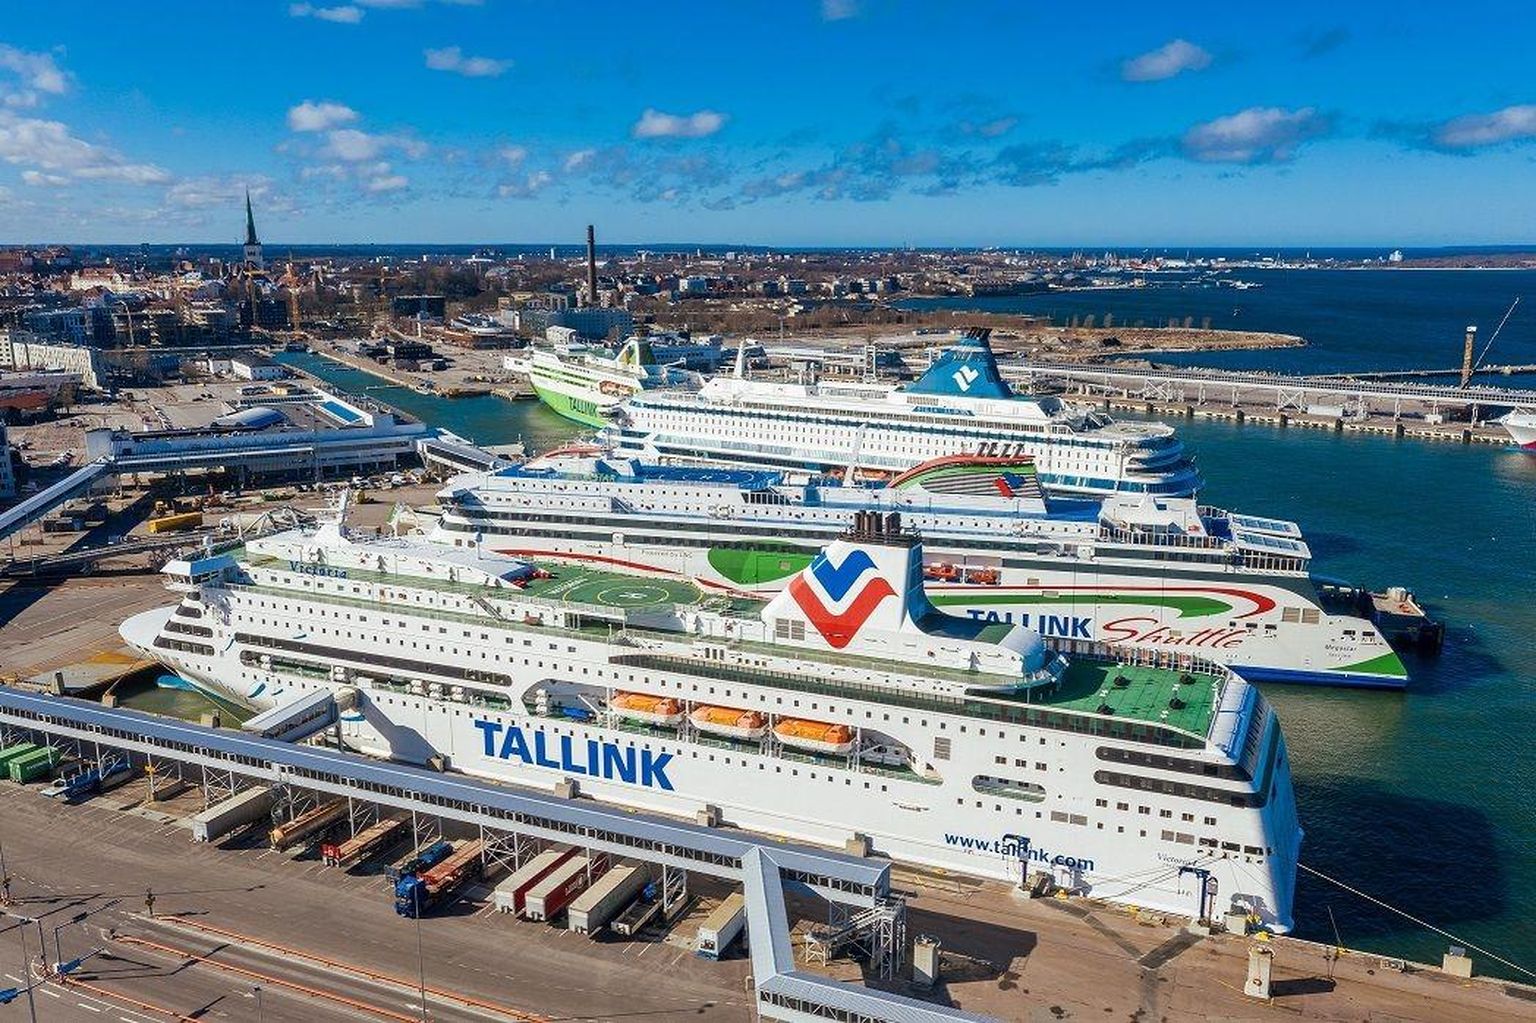 Tallinna Sadama teatel on nende tasud Stockholmi ja Helsingi sadamatega võrreldes madalamad, Tallinki hinnangul on ostujõupariteeti arvestades tasud vähemalt 20 protsenti keskmiselt kõrgemad.